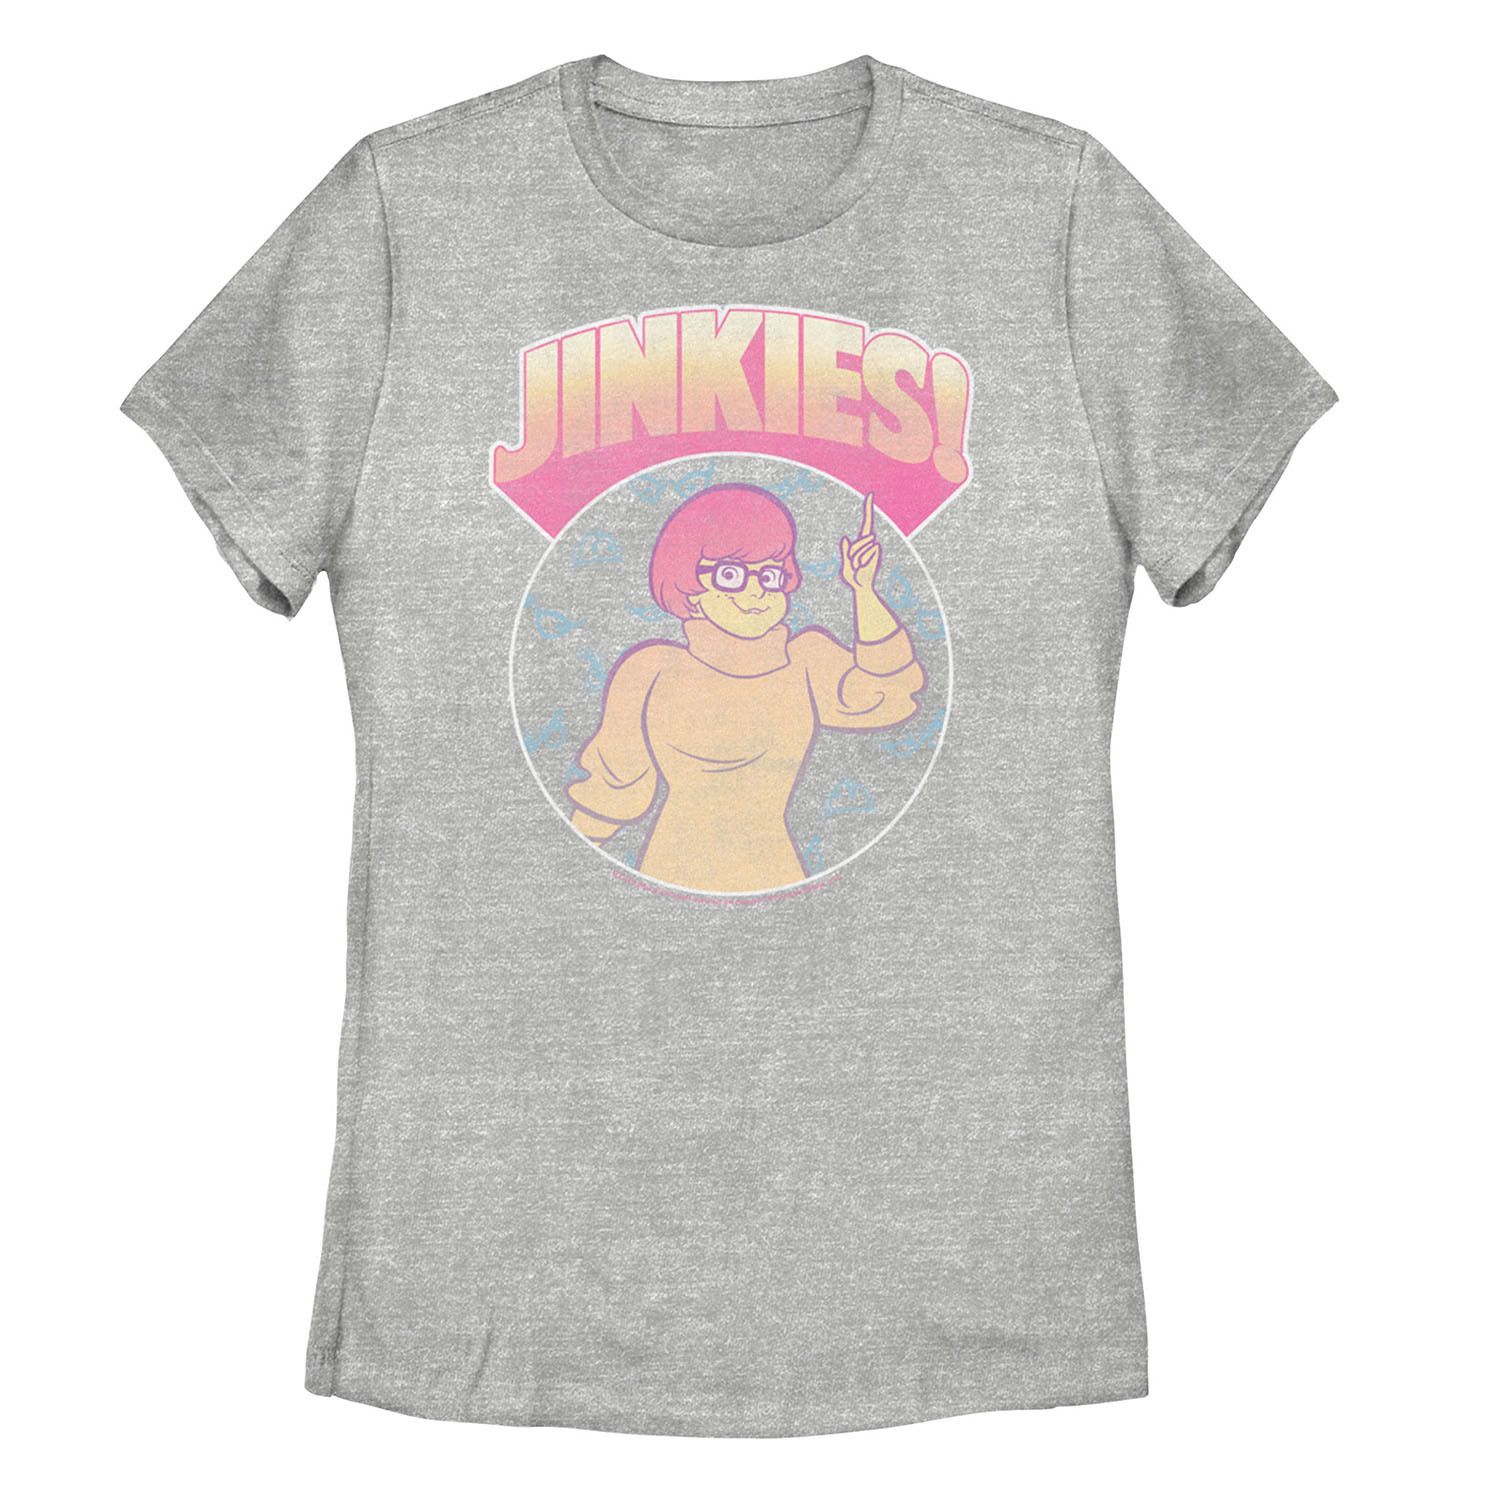 Детская футболка с рисунком Scooby-Doo Velma Jinkies Licensed Character мужская футболка с коротким рукавом scooby doo velma jinkies fifth sun